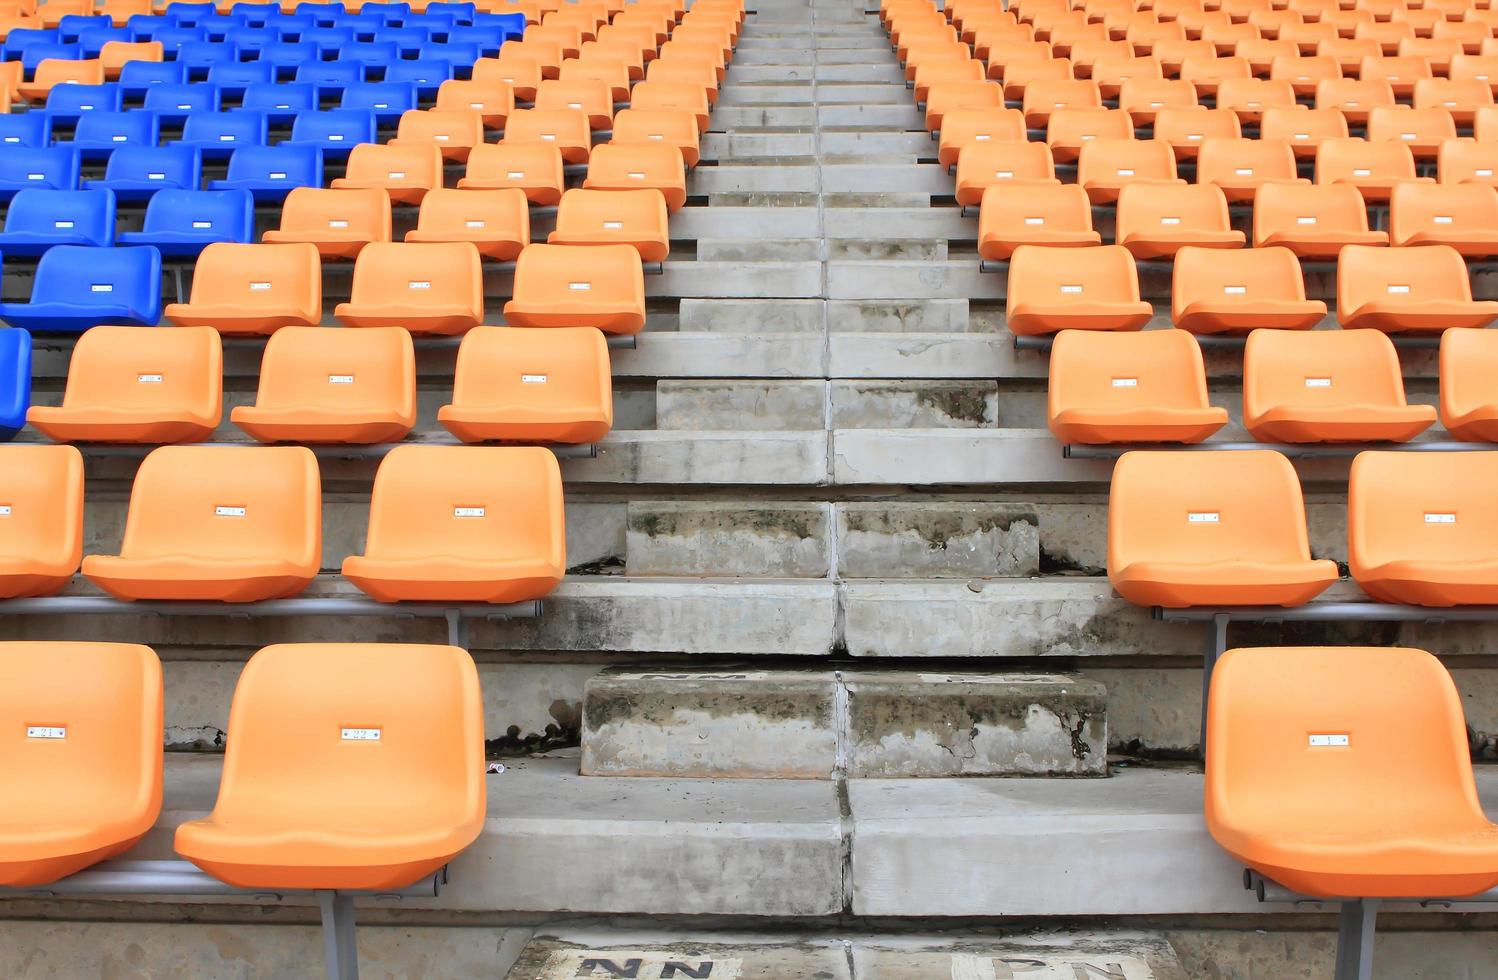 plastique, jaune et bleu, nouvelles chaises dans le stade. photo